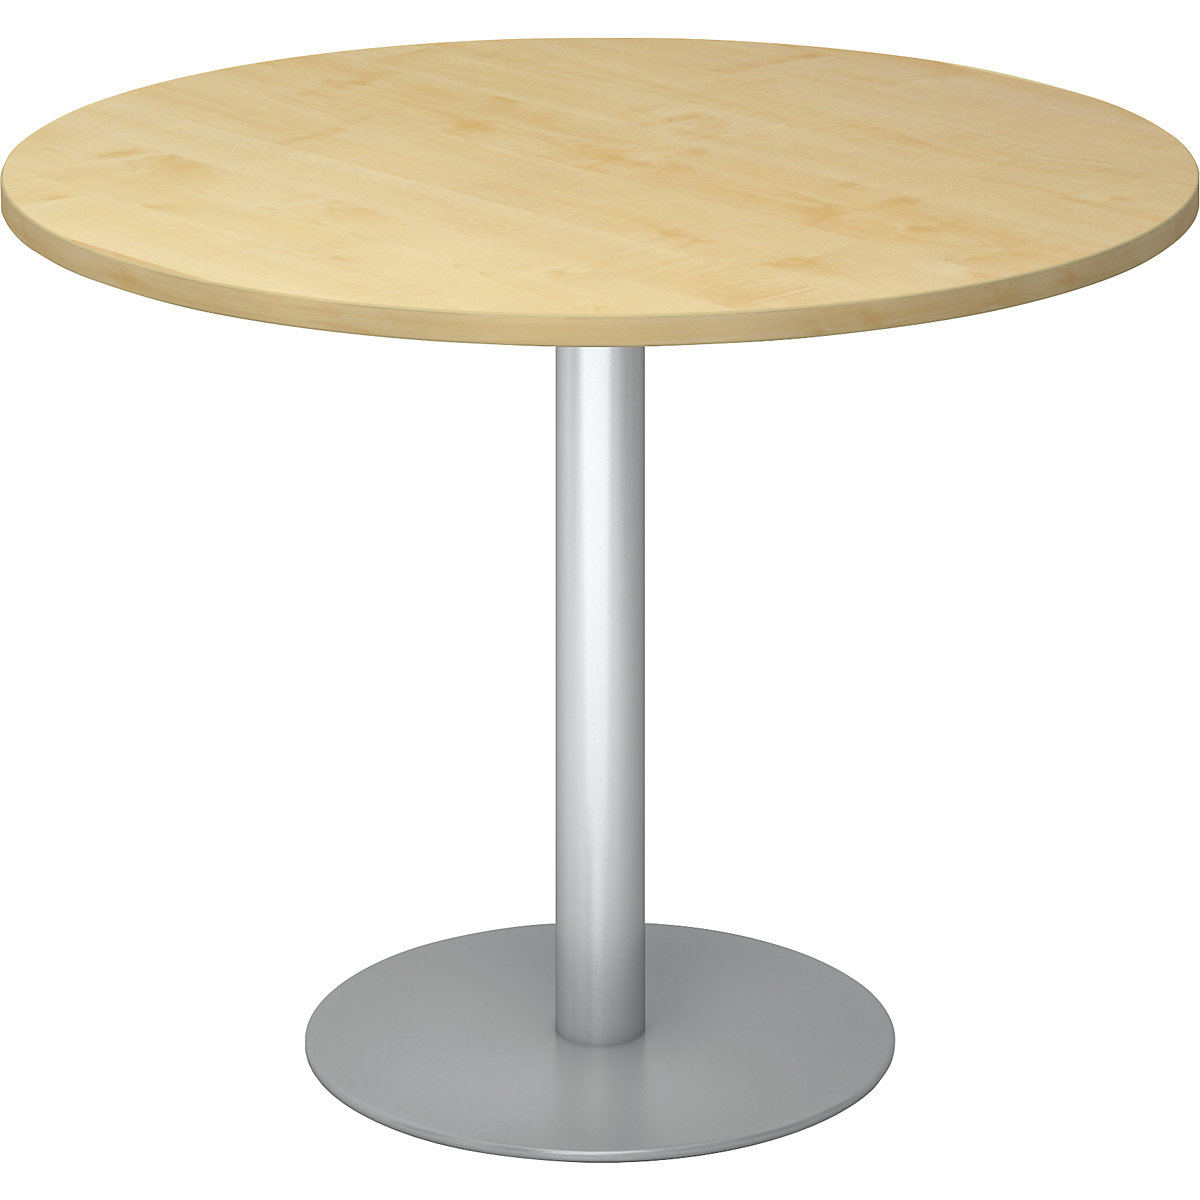 Tárgyalóasztal, Ø 1000 mm, 755 mm magas, ezüst váz, juhar-dekor asztallap